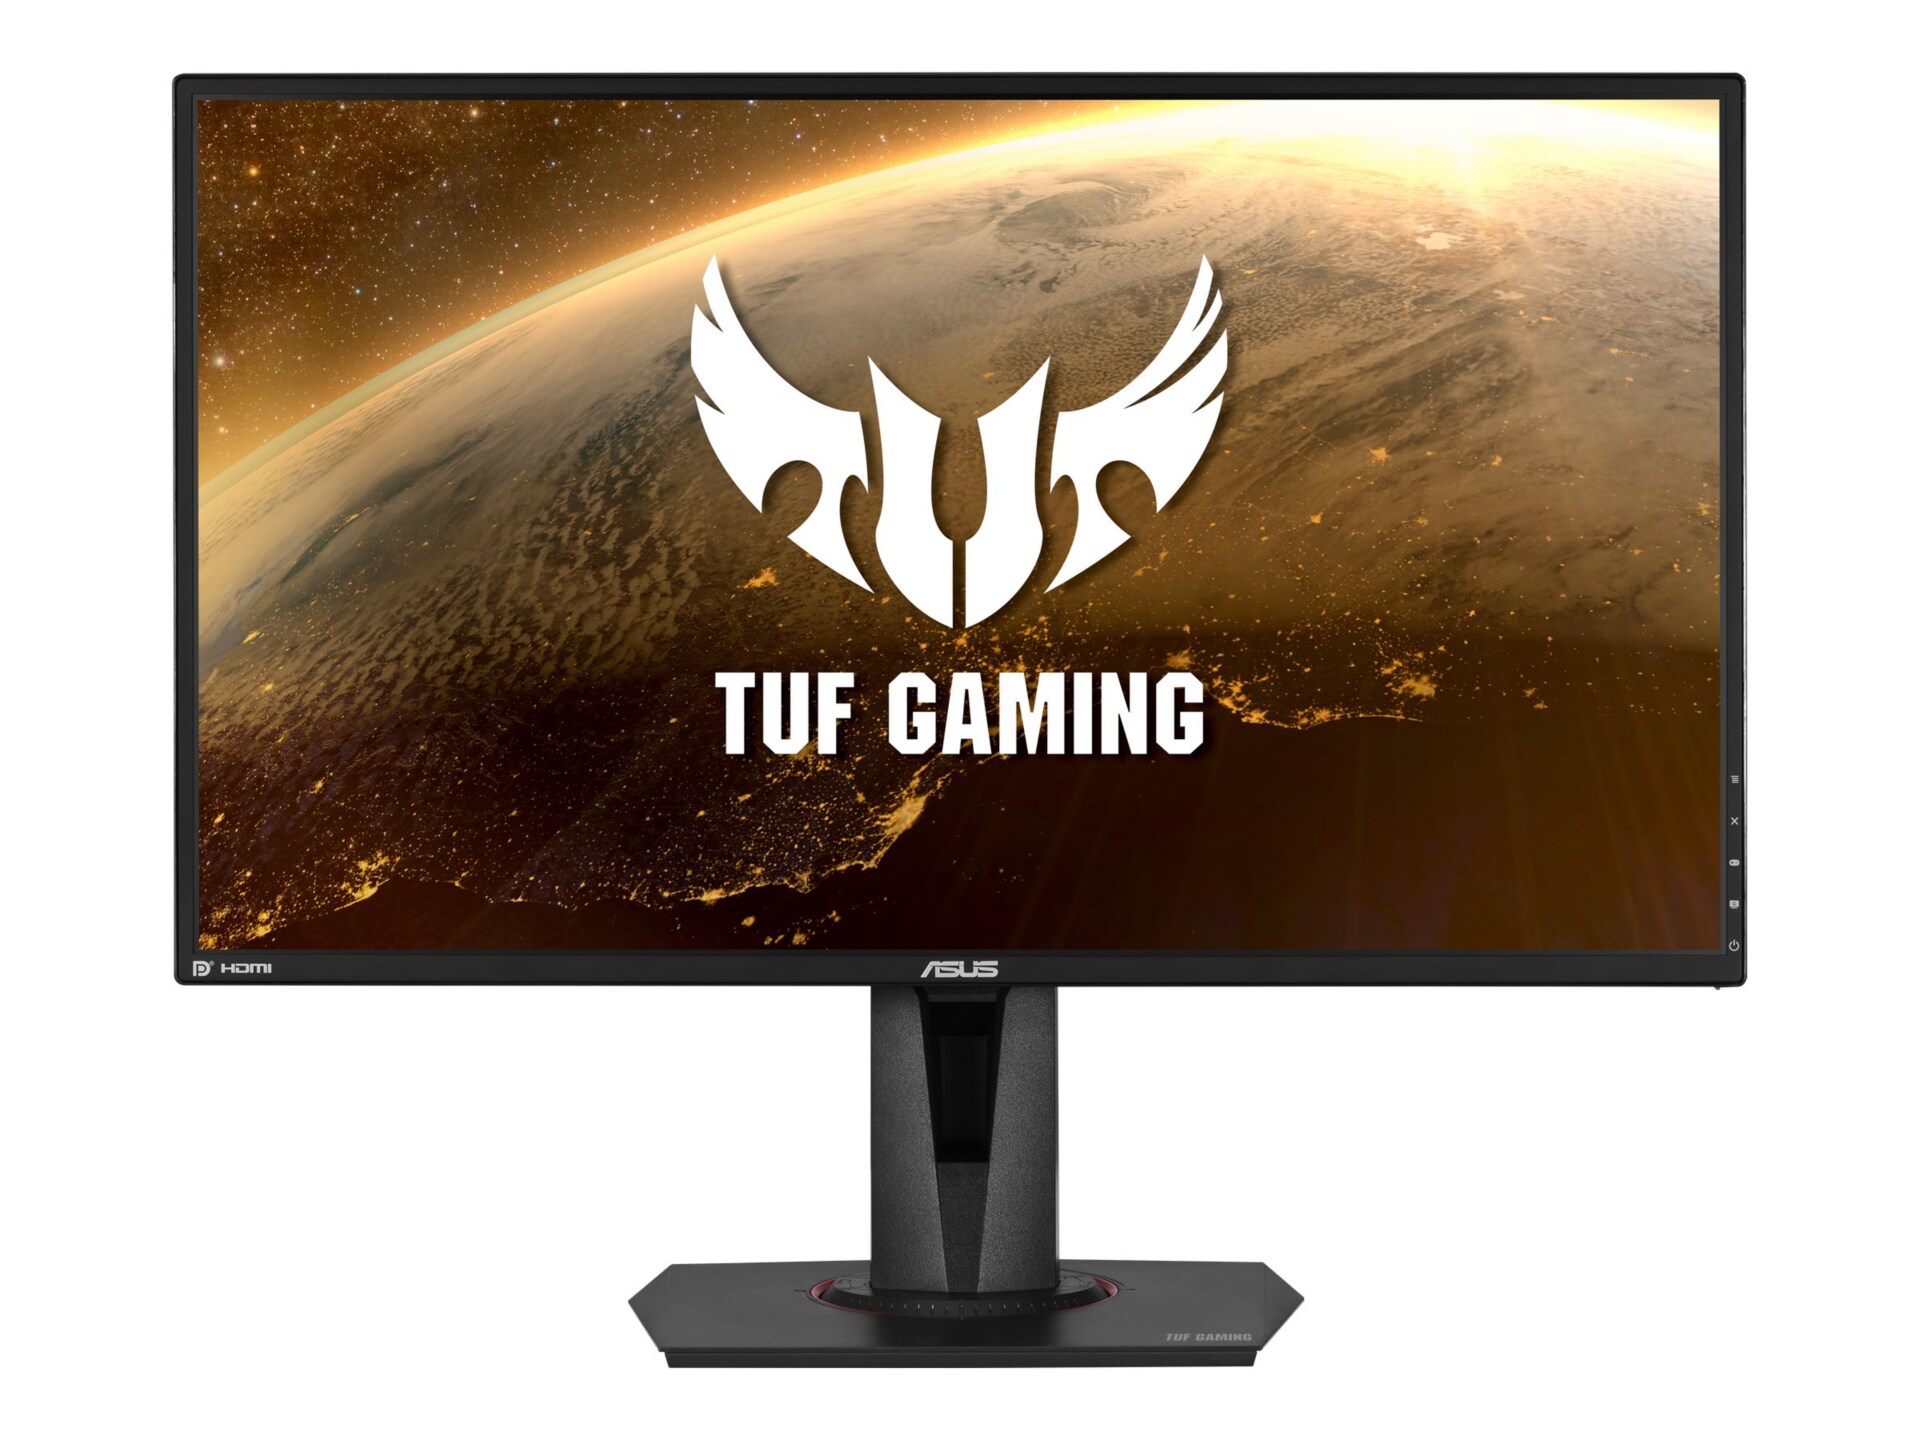 ASUS TUF Gaming VG27BQ - LED monitor - 27" - HDR